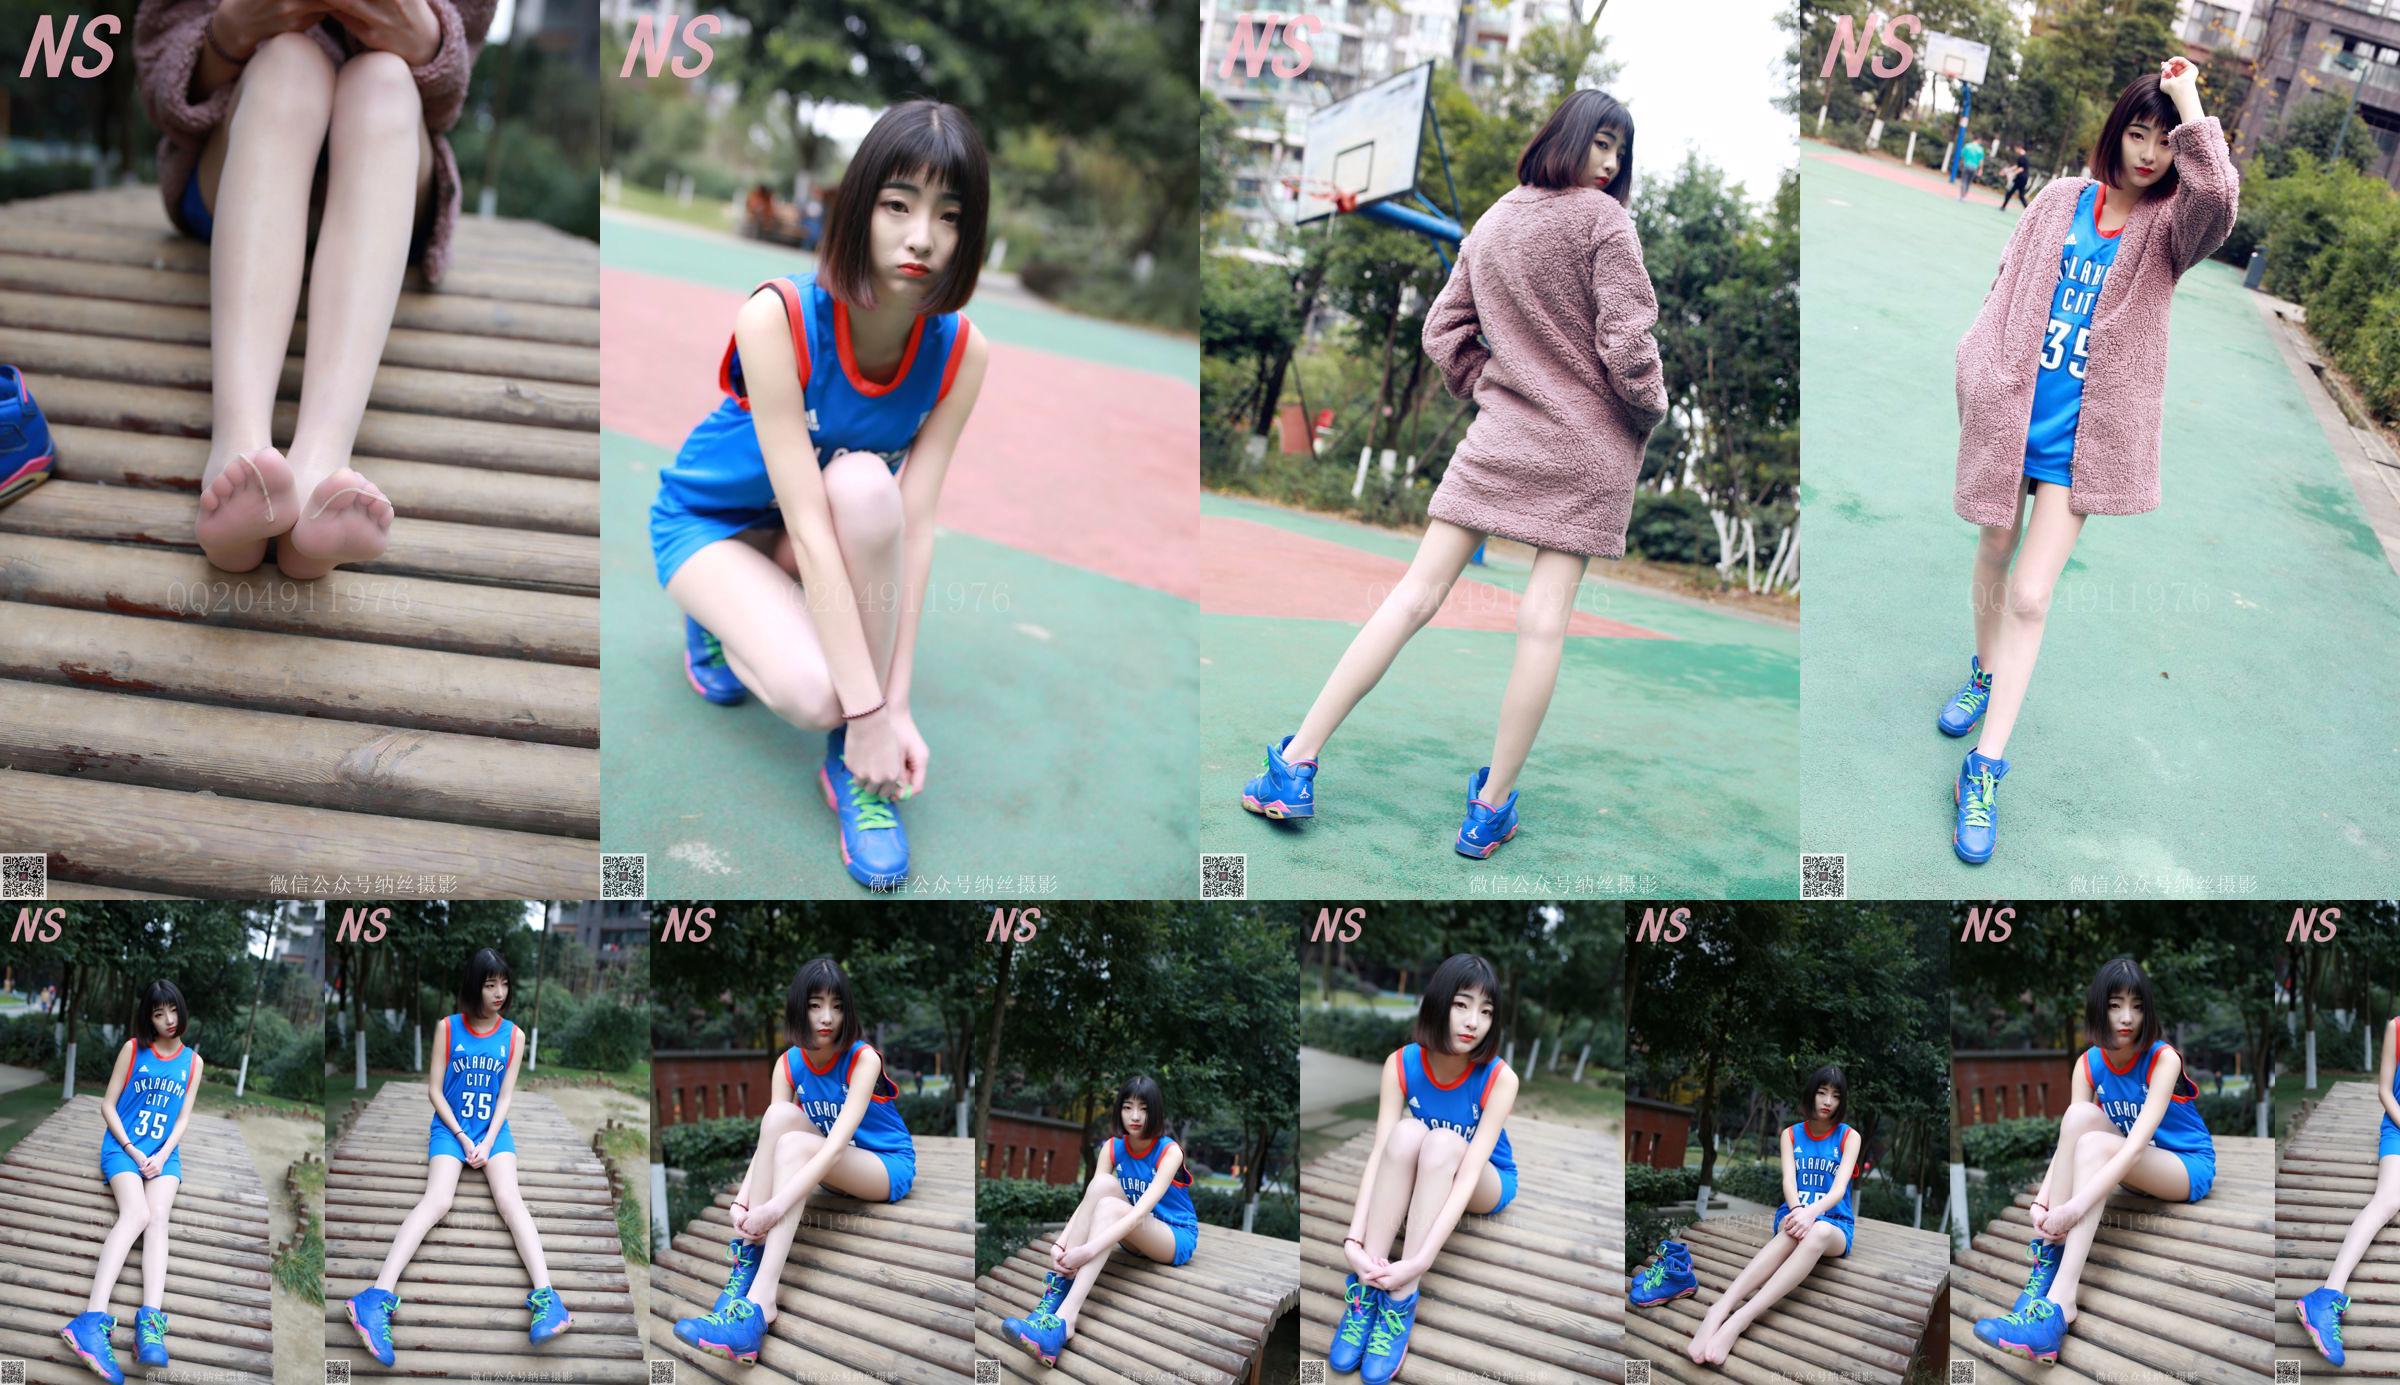 Chen Yujie "Basketball Girl" [Nasi Photography] N ° 107 No.f78958 Page 1